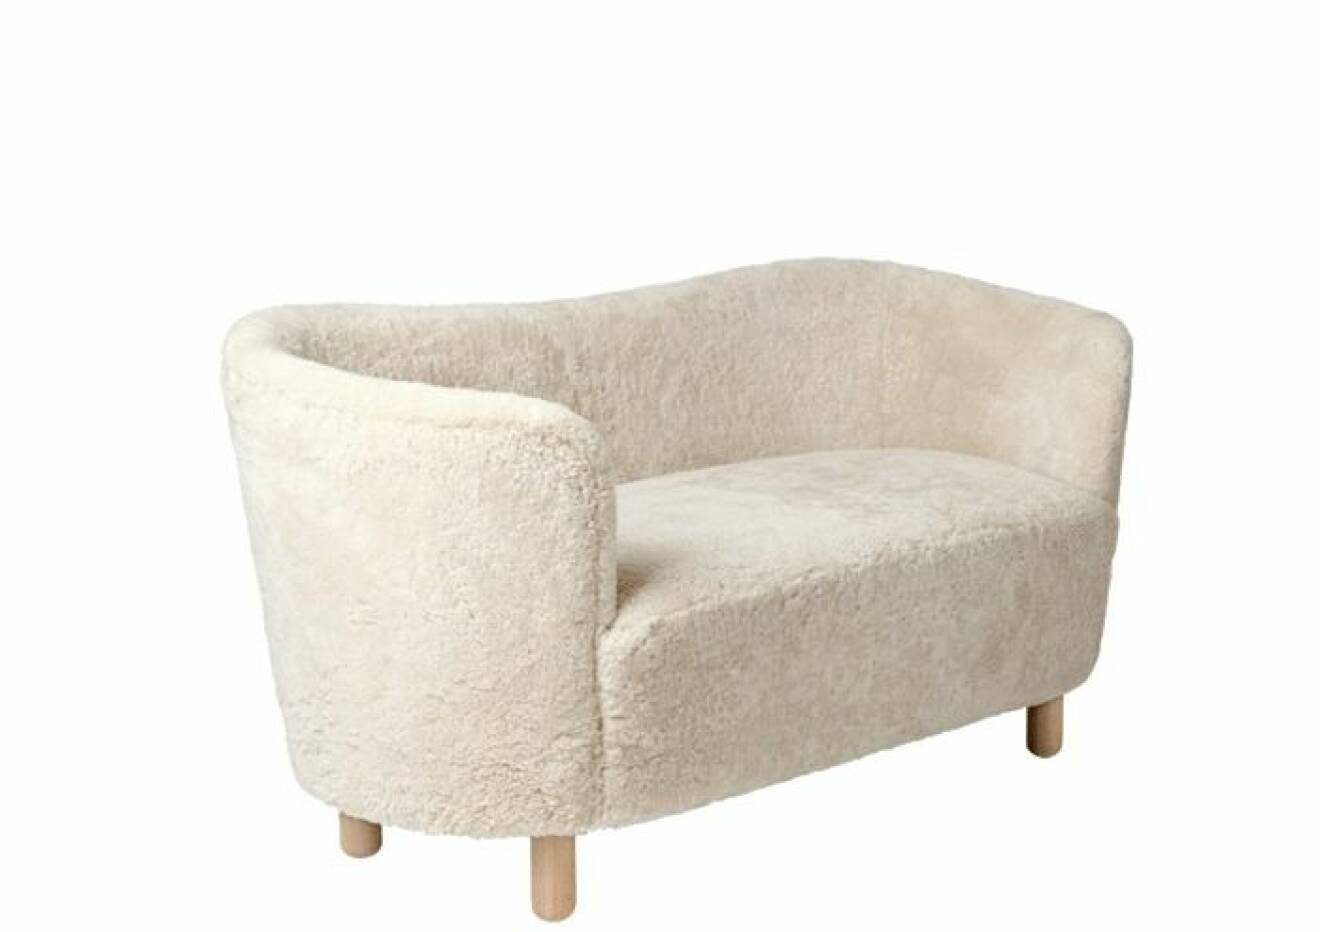 Härlig soffa som för tankarna till ull och hög bekvämlighet